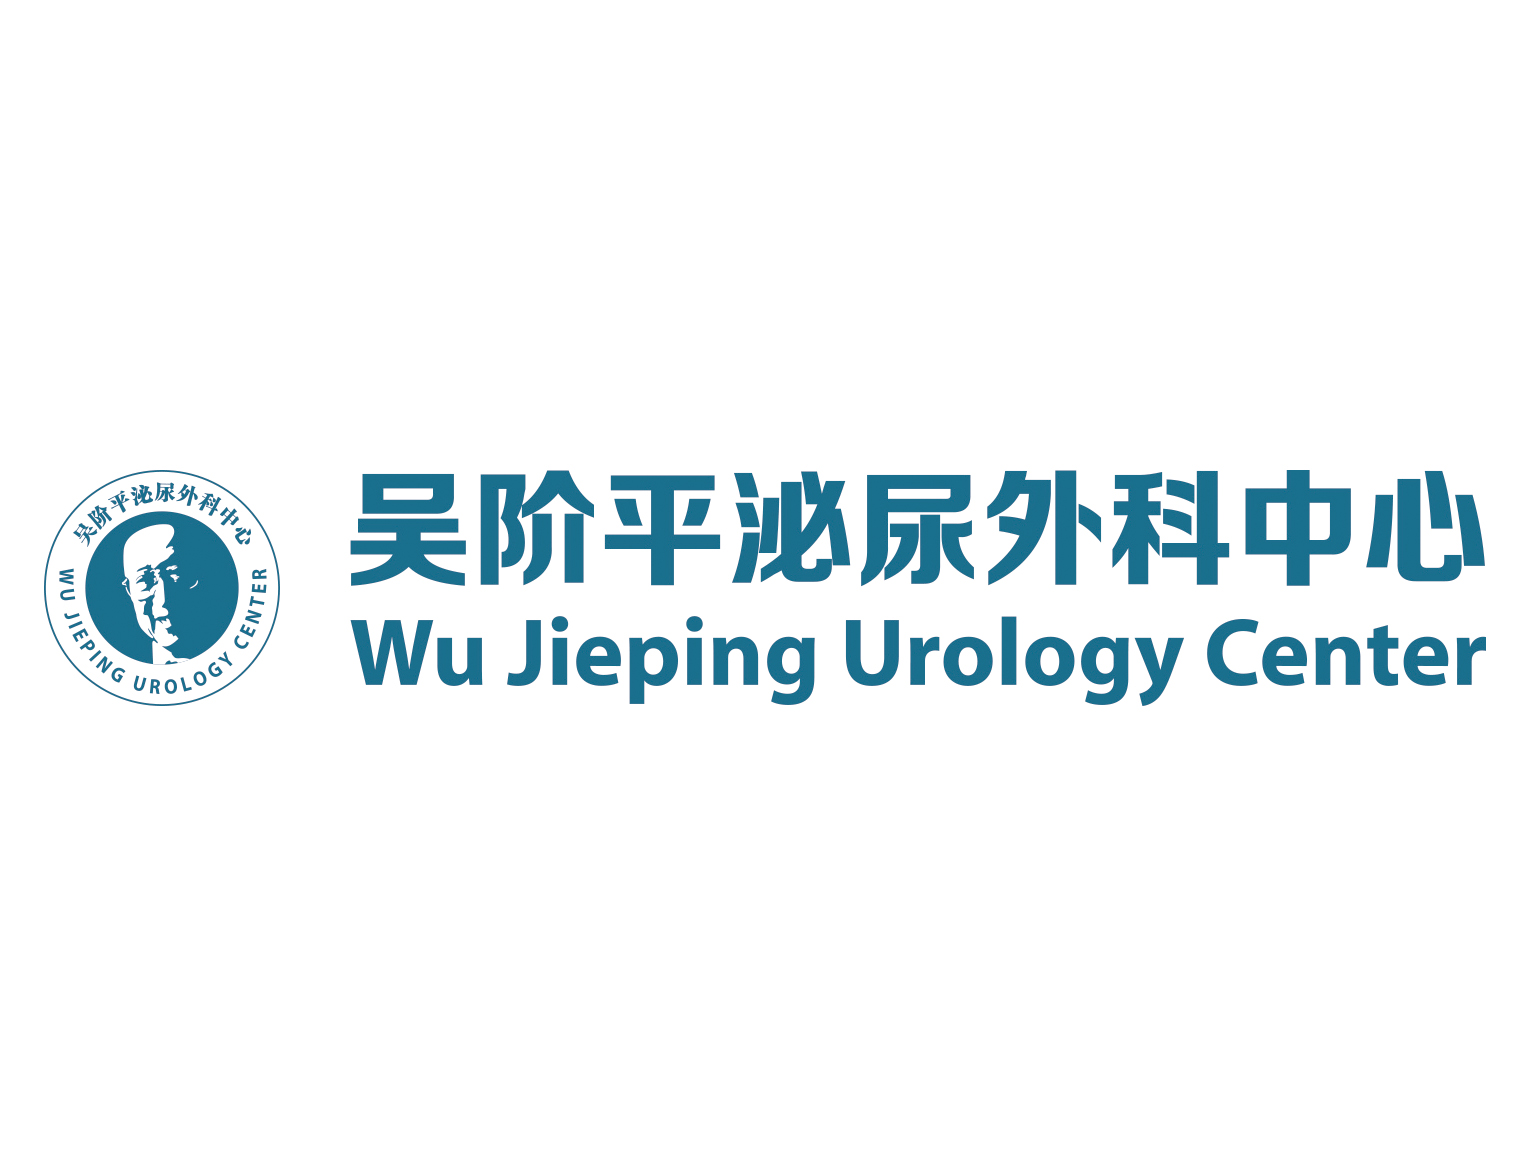 吳階平泌尿外科中心(北京大學吳階平泌尿外科醫學中心)